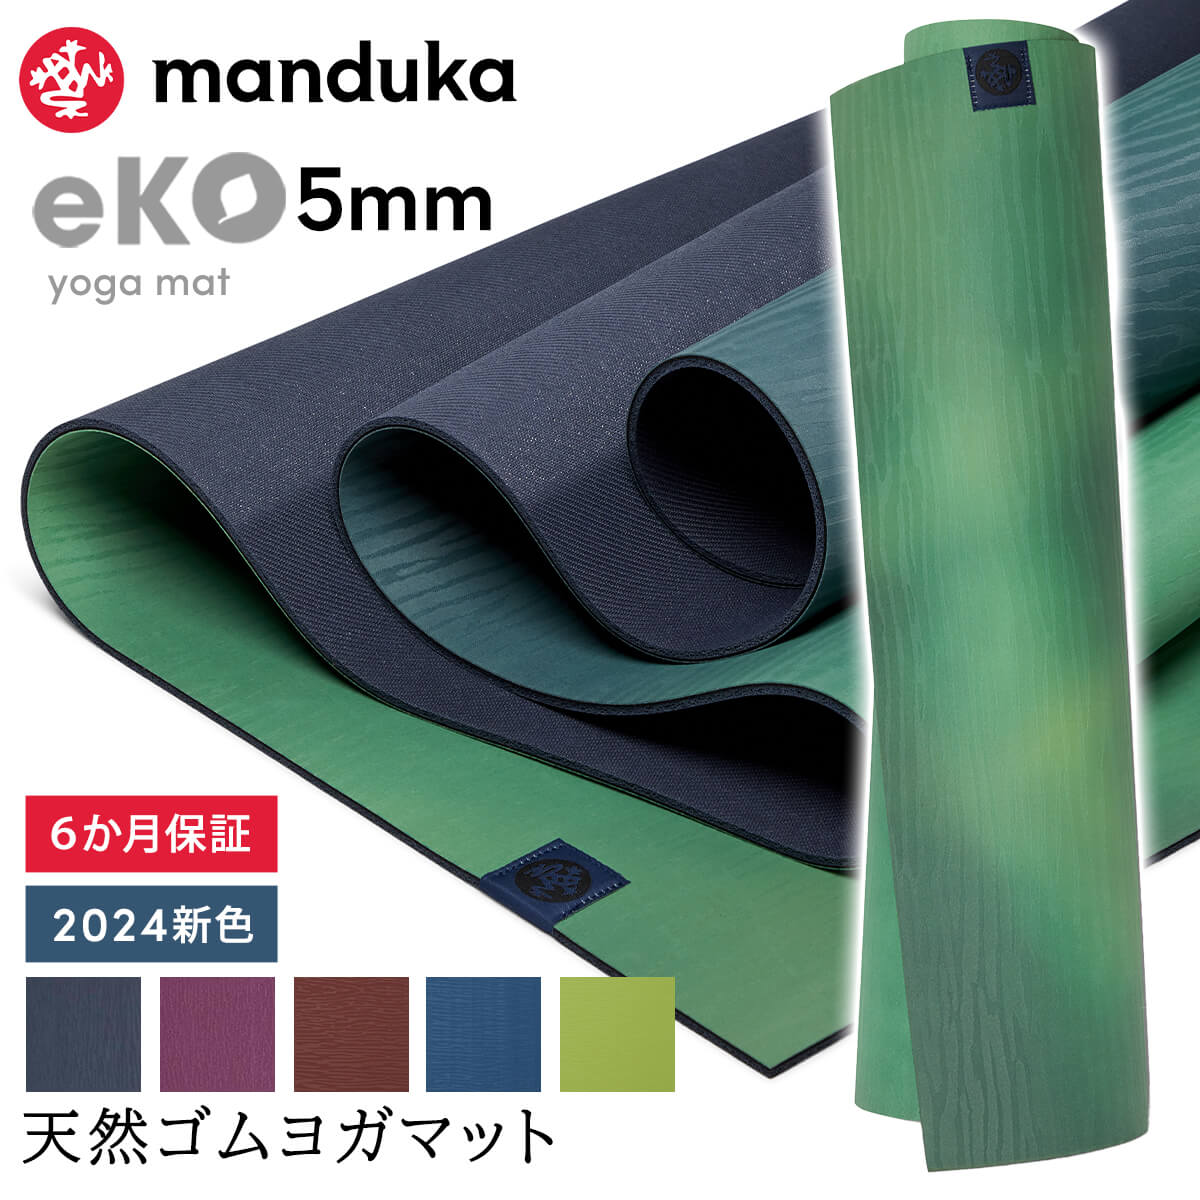 マンドゥカ Manduka ヨガマット エコ 5mm 《6か月保証》日本正規品 eKO yoga mat 筋トレ ピラティス トレーニング 天然ゴム 柄 24SS「TR」 ST-MA 001 RVPA 401105111